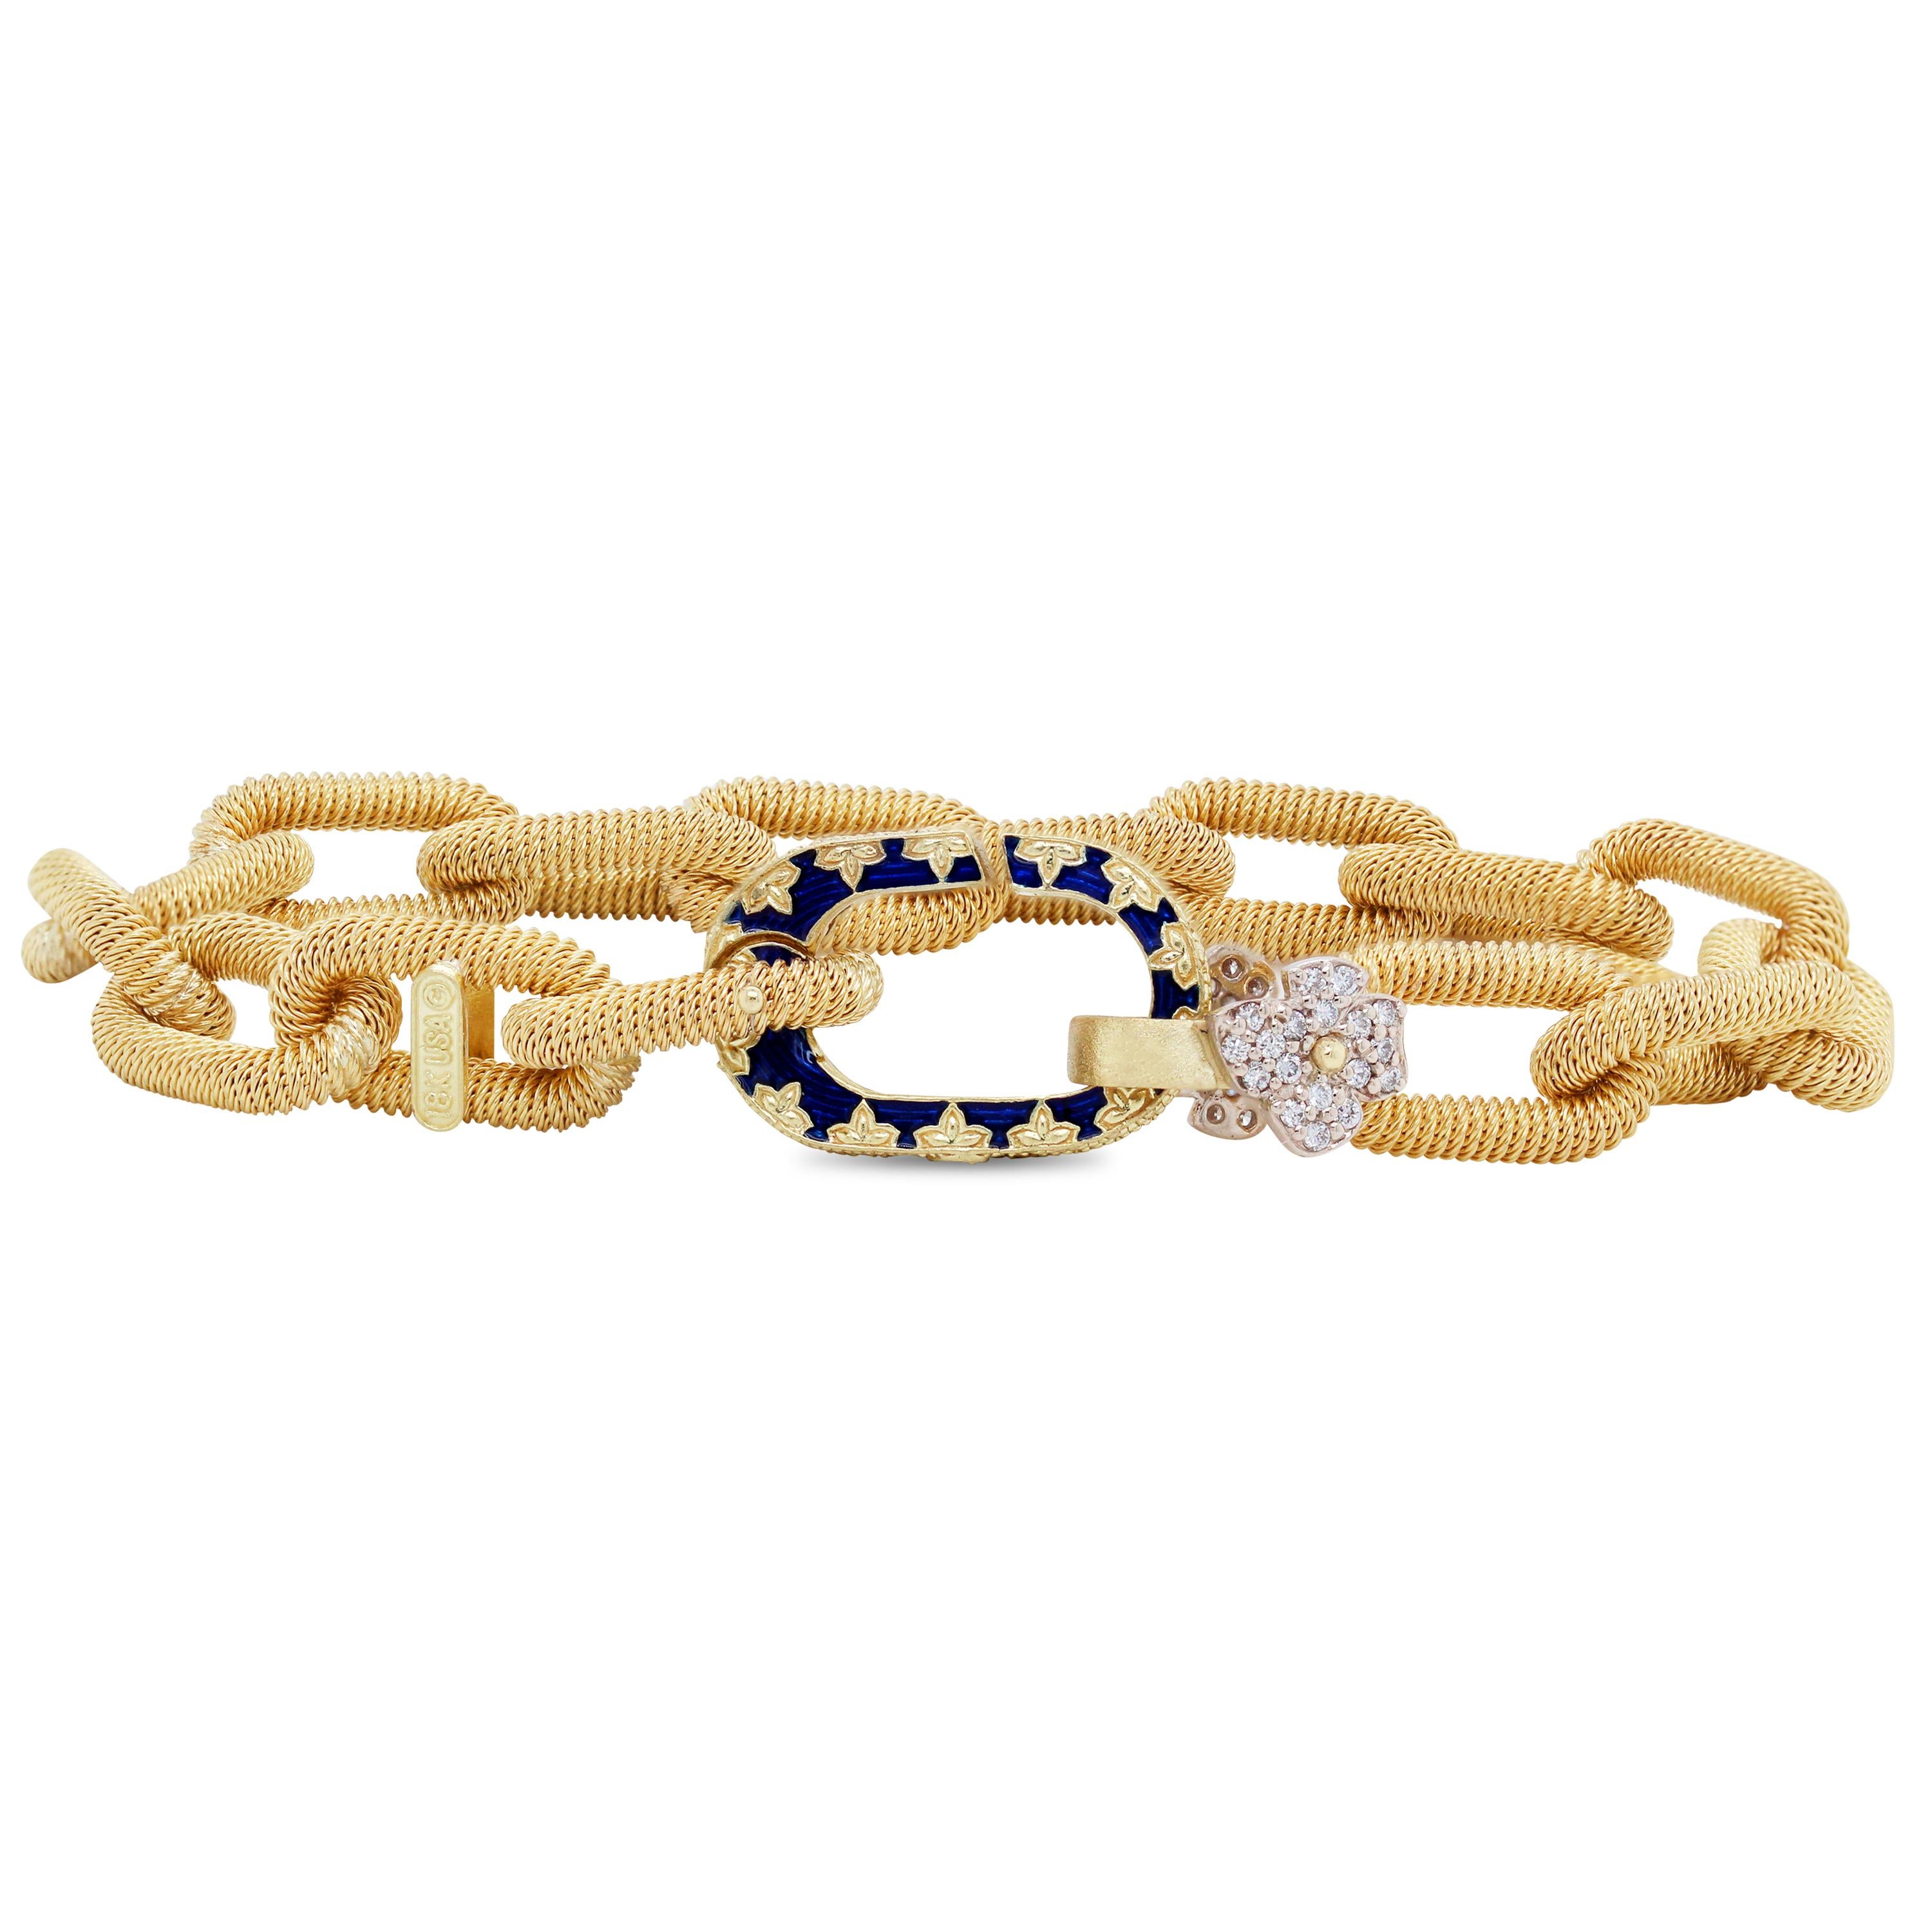 Bracelet Stambolian avec maillons en or jaune 18K, émail bleu et diamant en forme de fleur

Ce magnifique bracelet de Stambolian présente de beaux maillons lourds et texturés qui aboutissent à un fermoir en émail bleu orné d'une fleur en diamant. Le